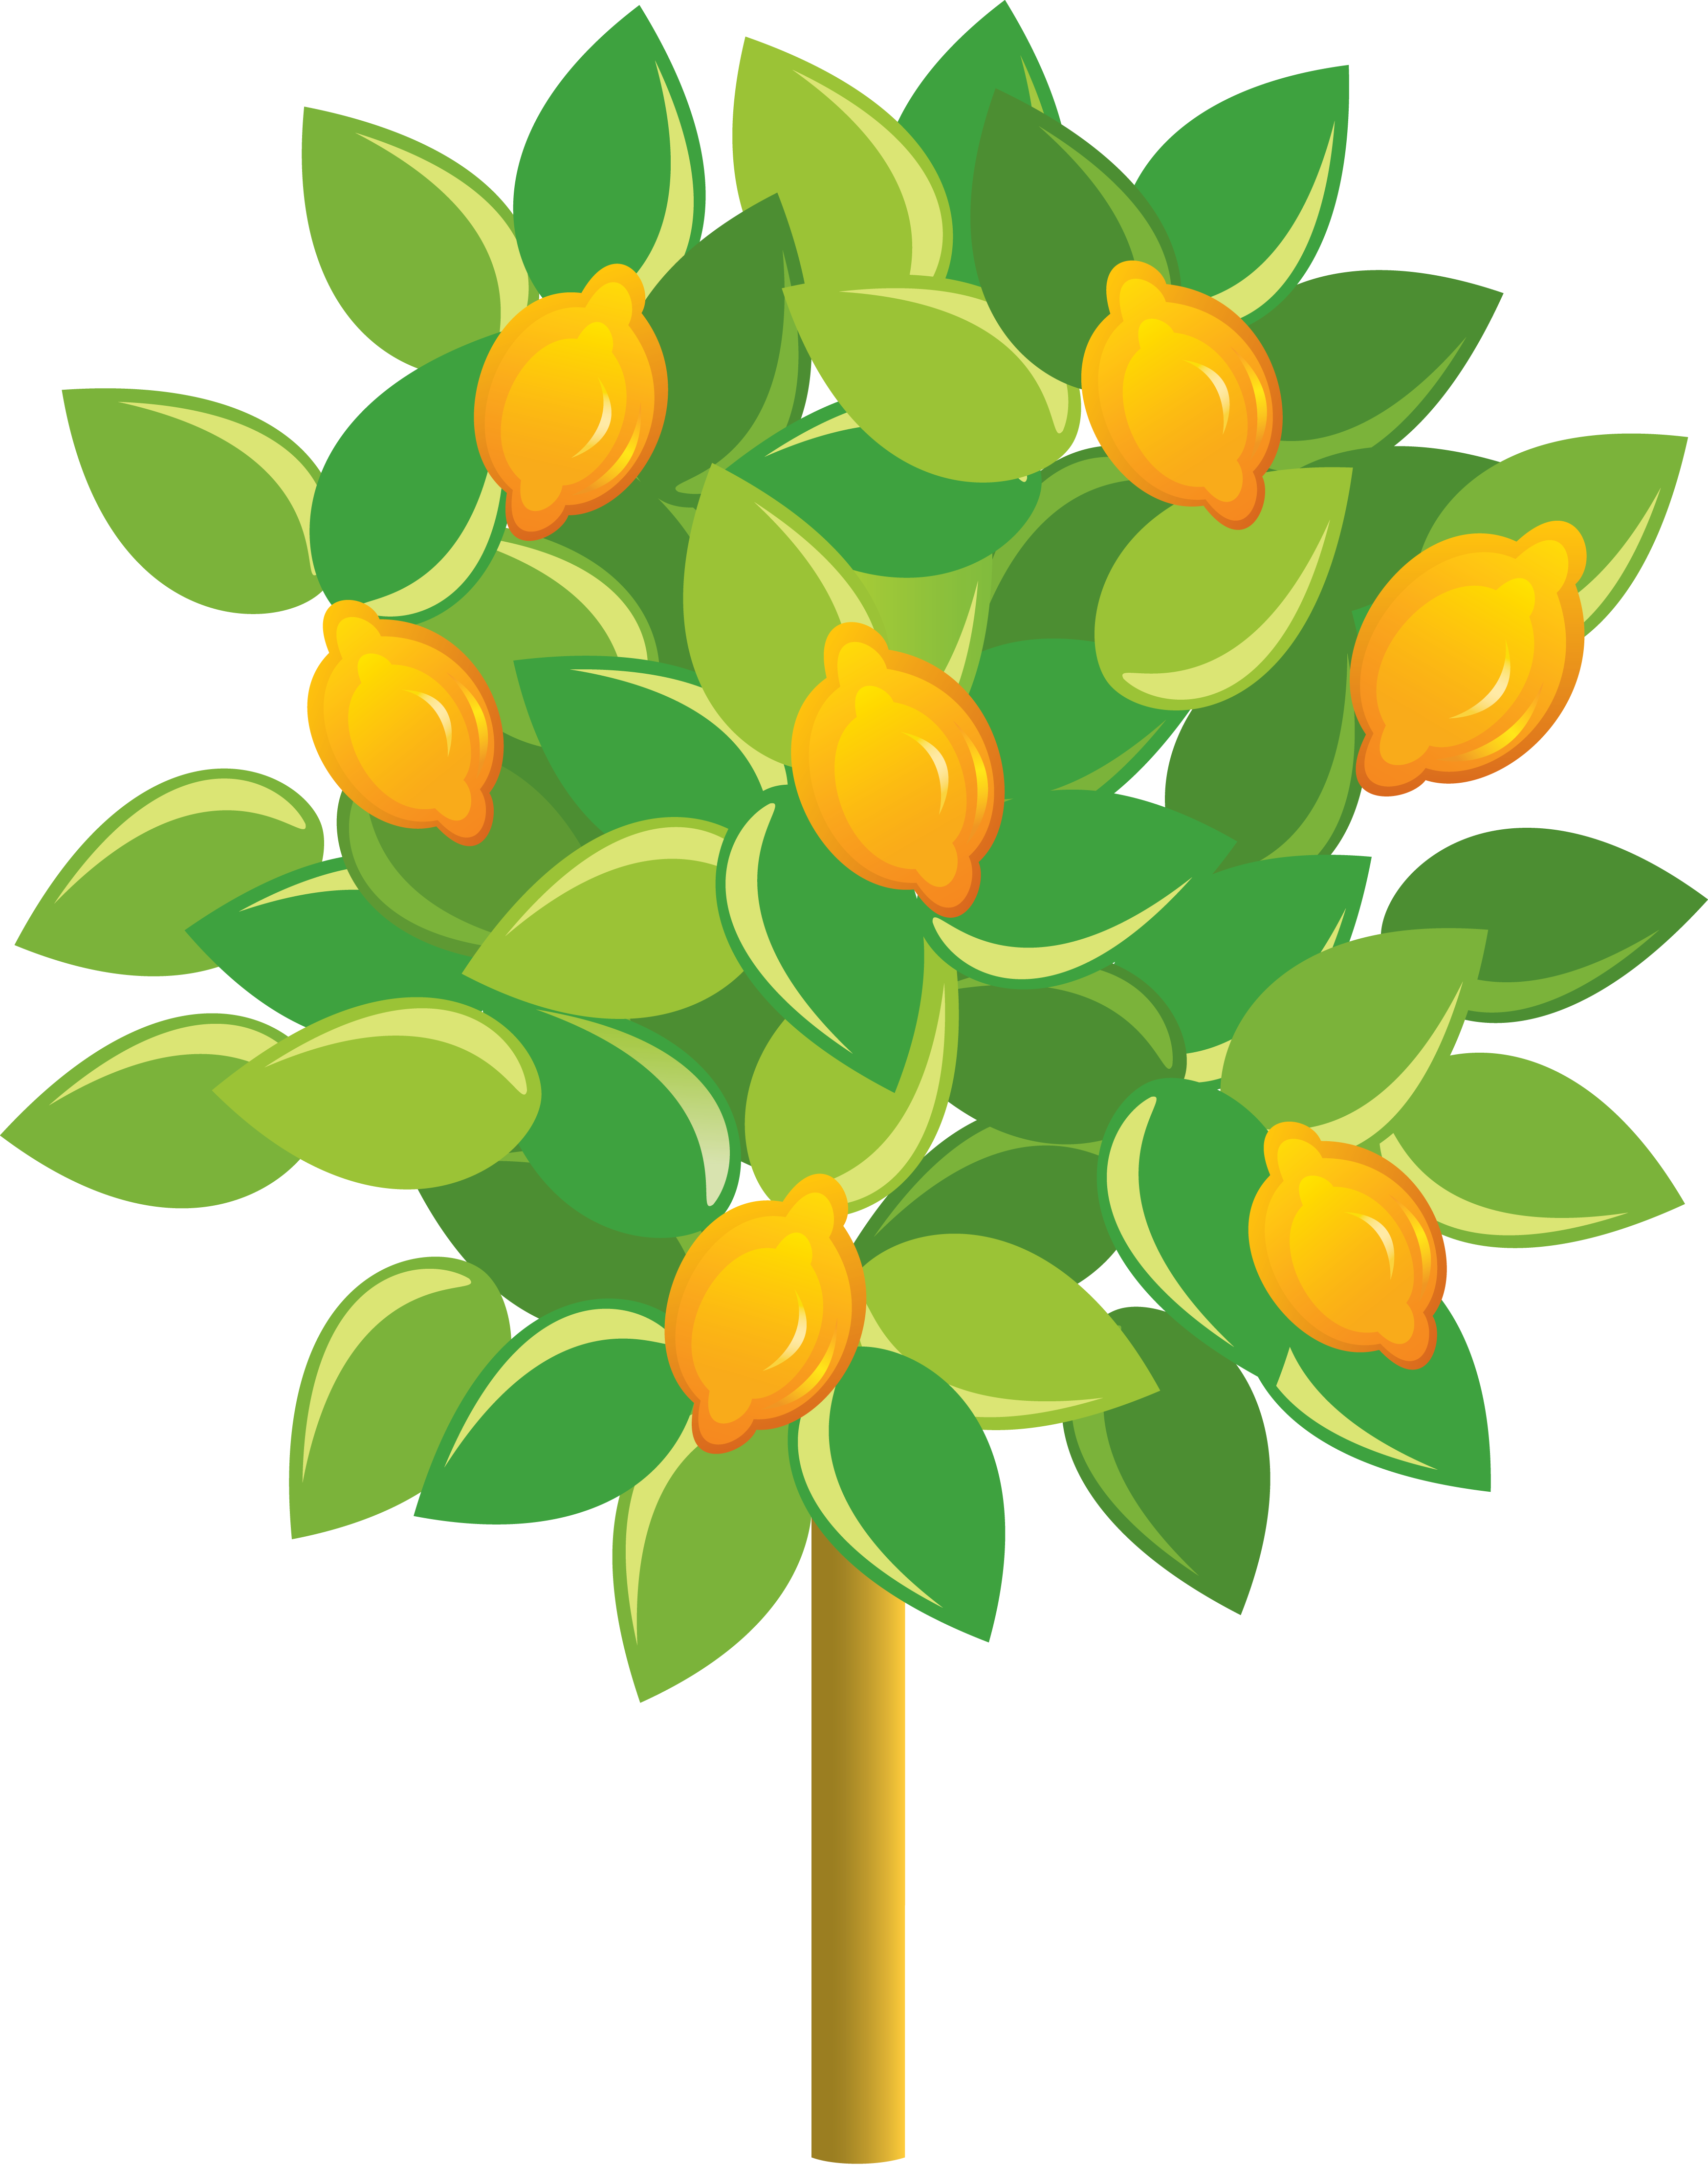 بکگراند شگفت انگیز و دیدنی از درخت کارتونی لیمو